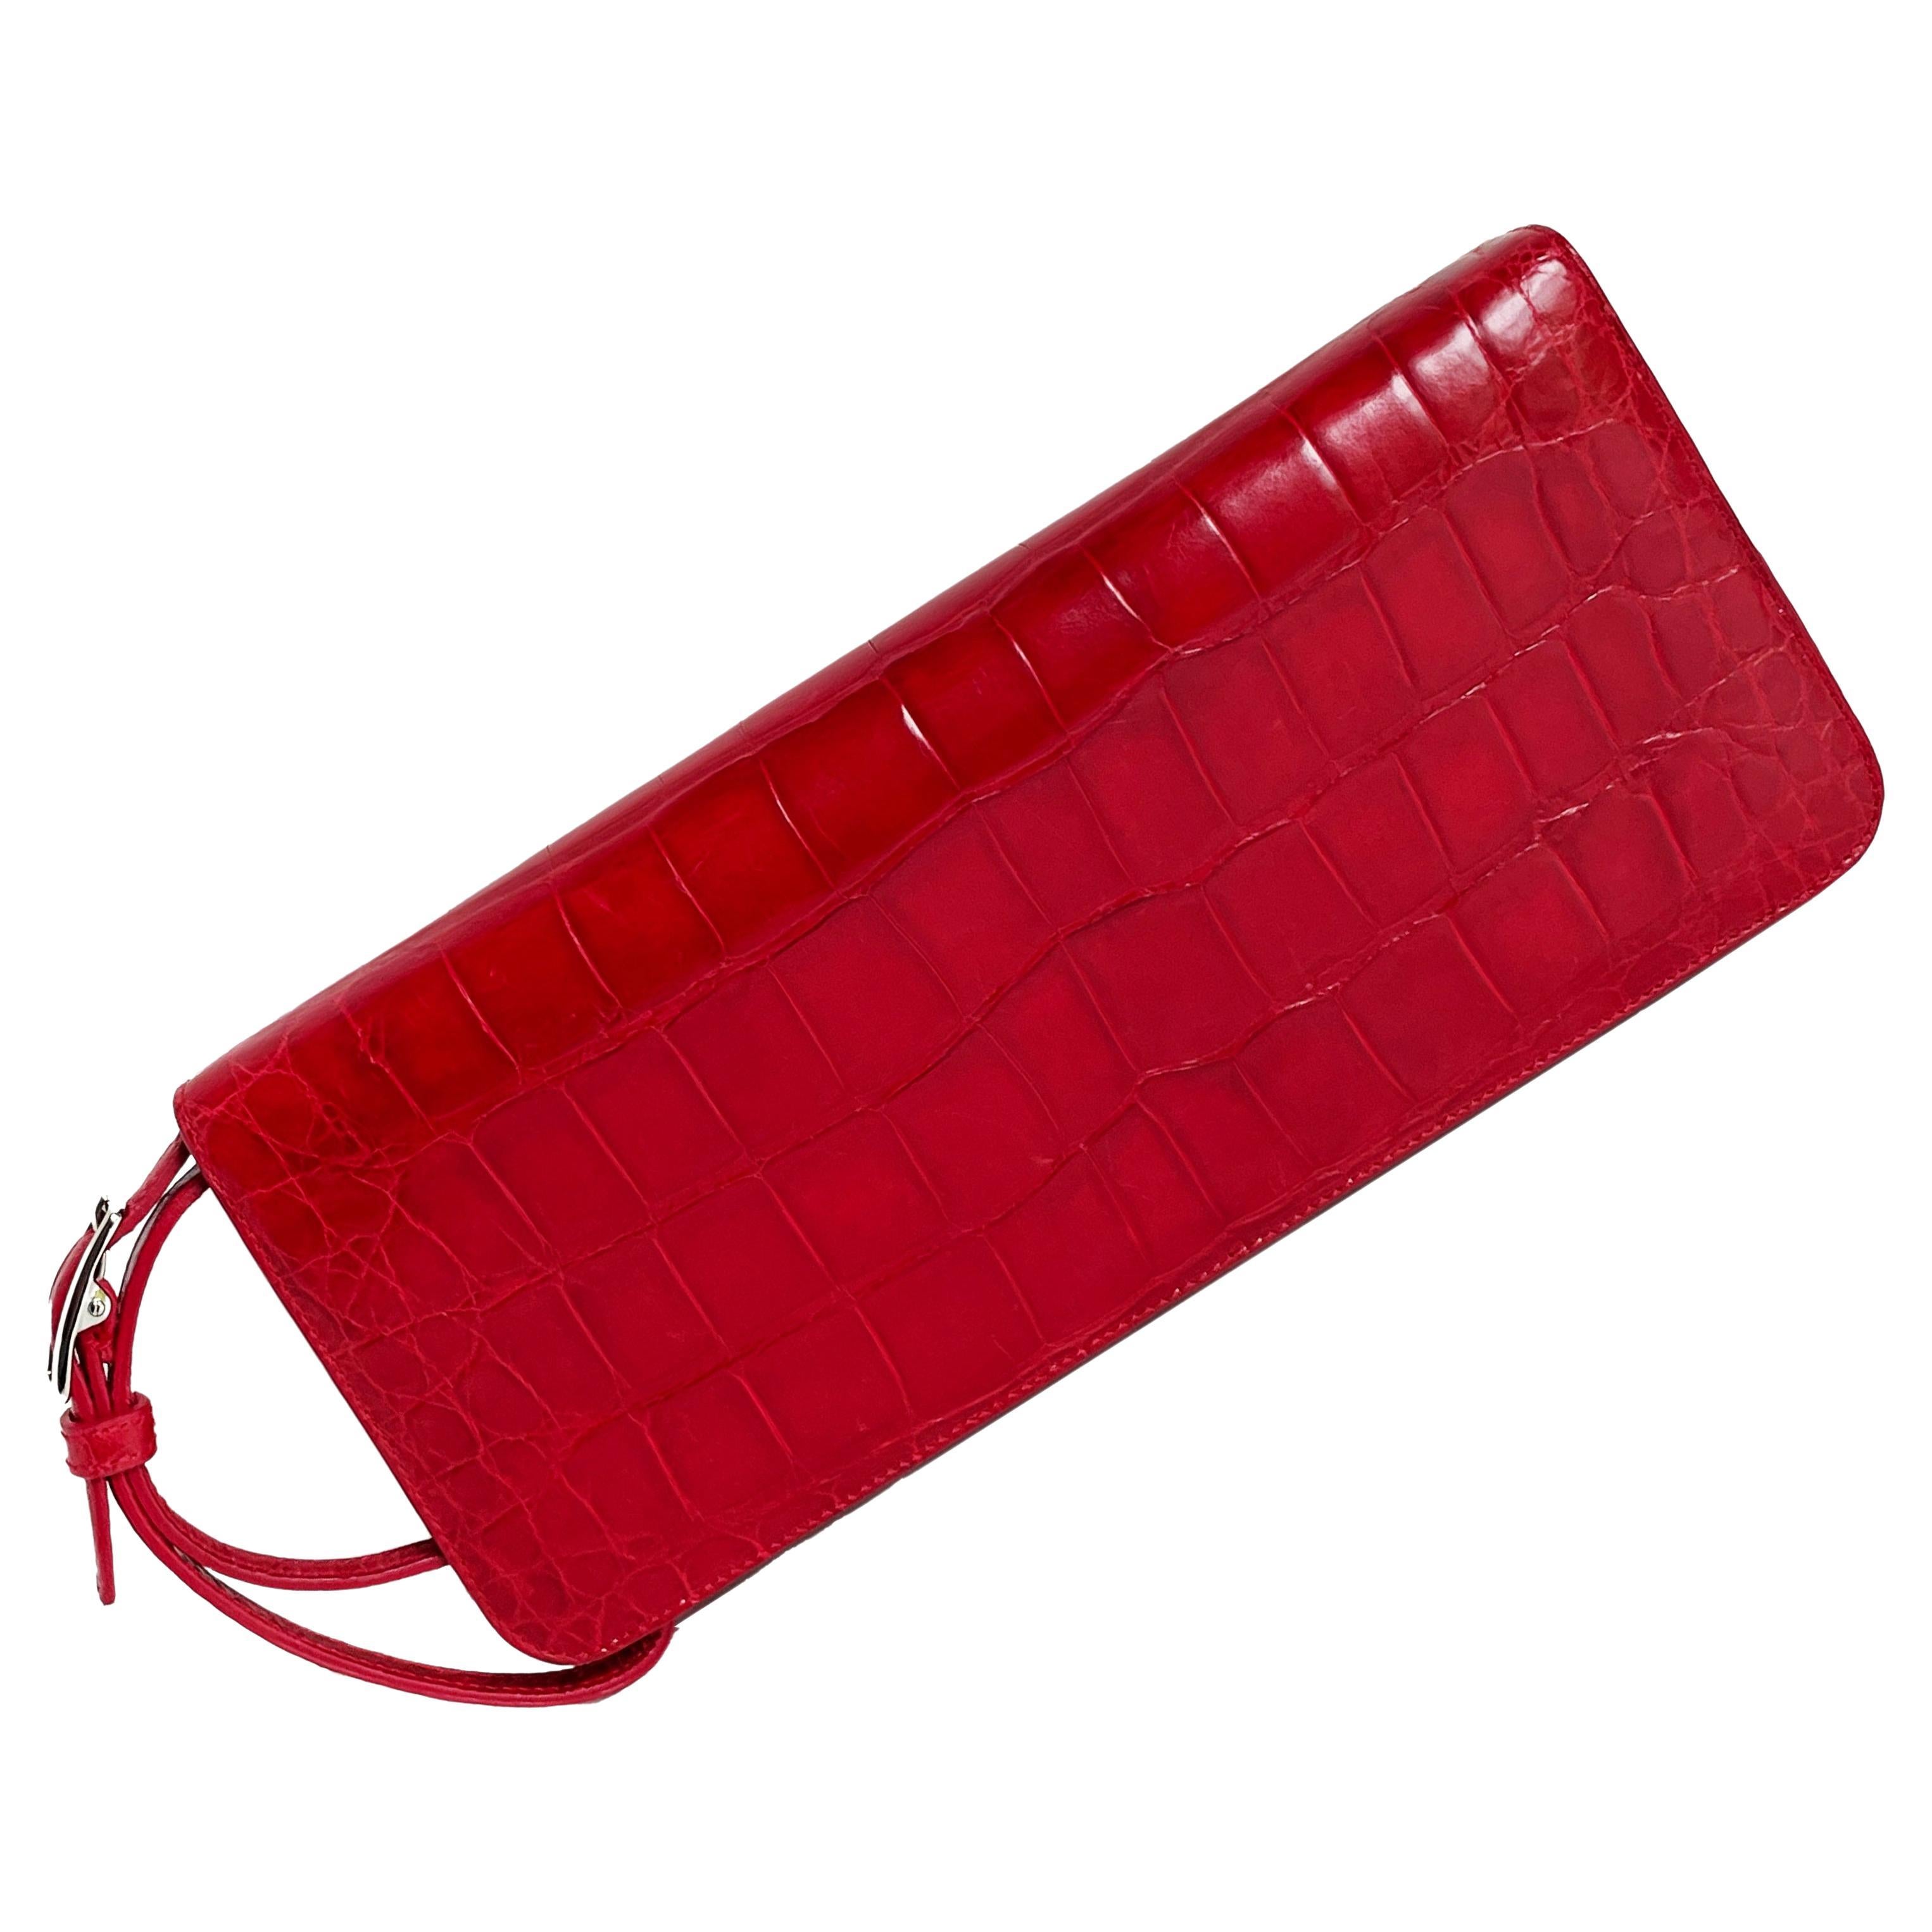 Coach grand sac pochette #8389 Italie édition limitée rouge alligator exotique HTF rare en vente